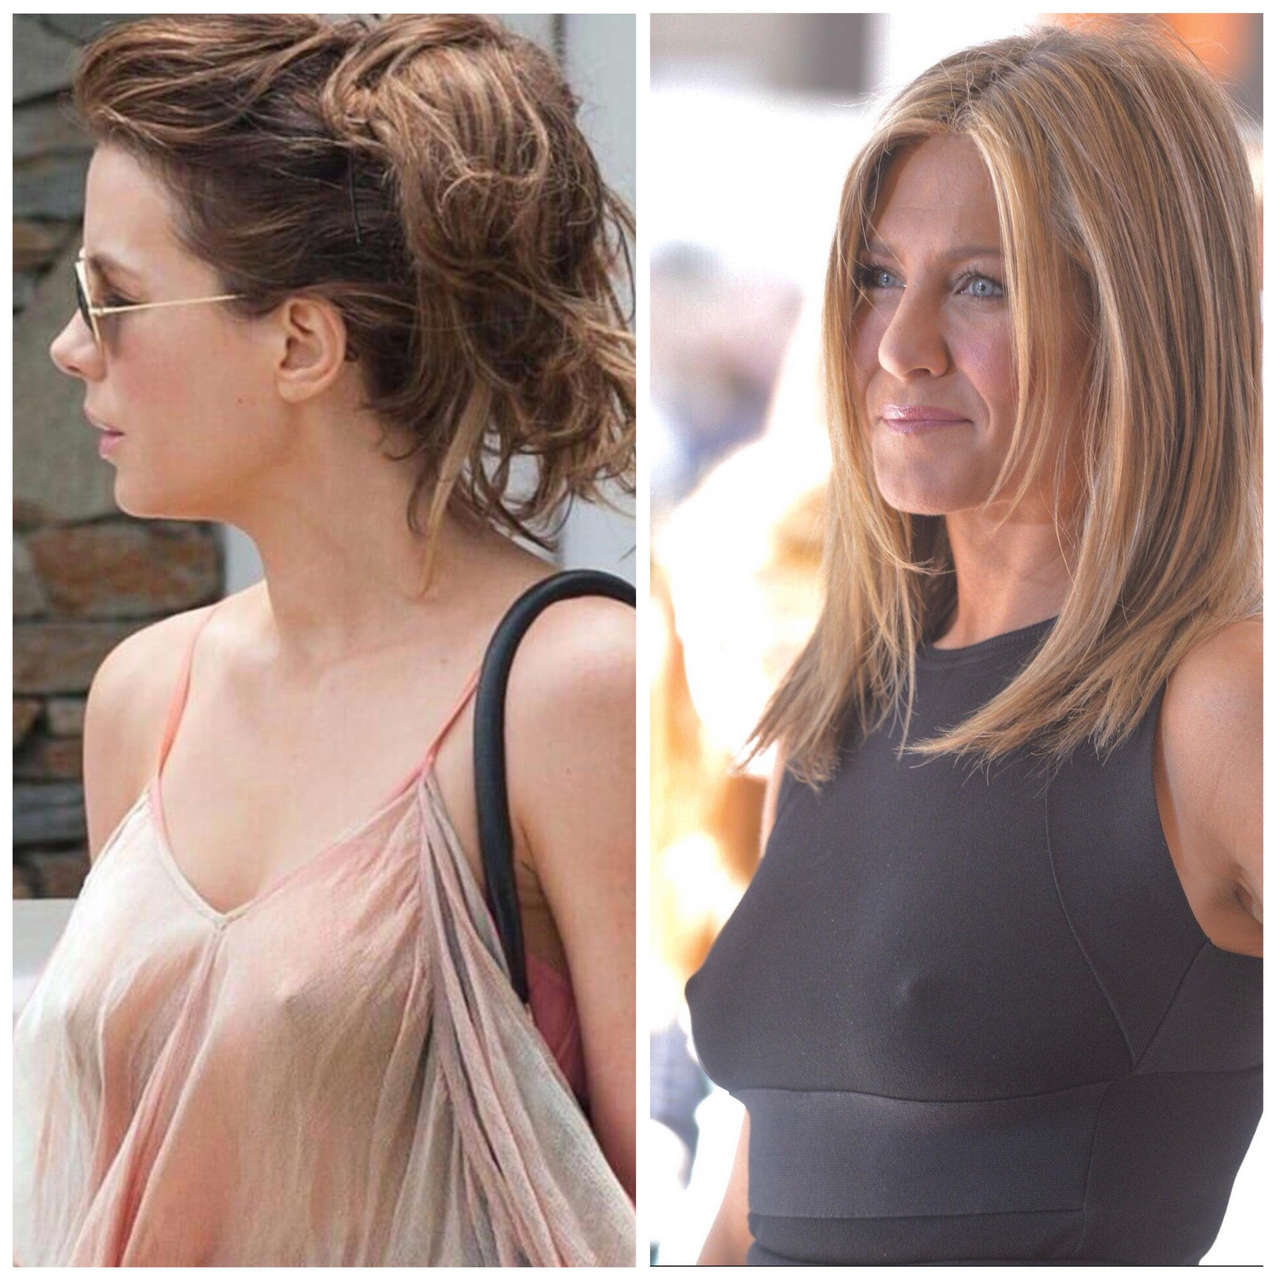 Kate Beckinsale Vs Jennifer Aniston NSF